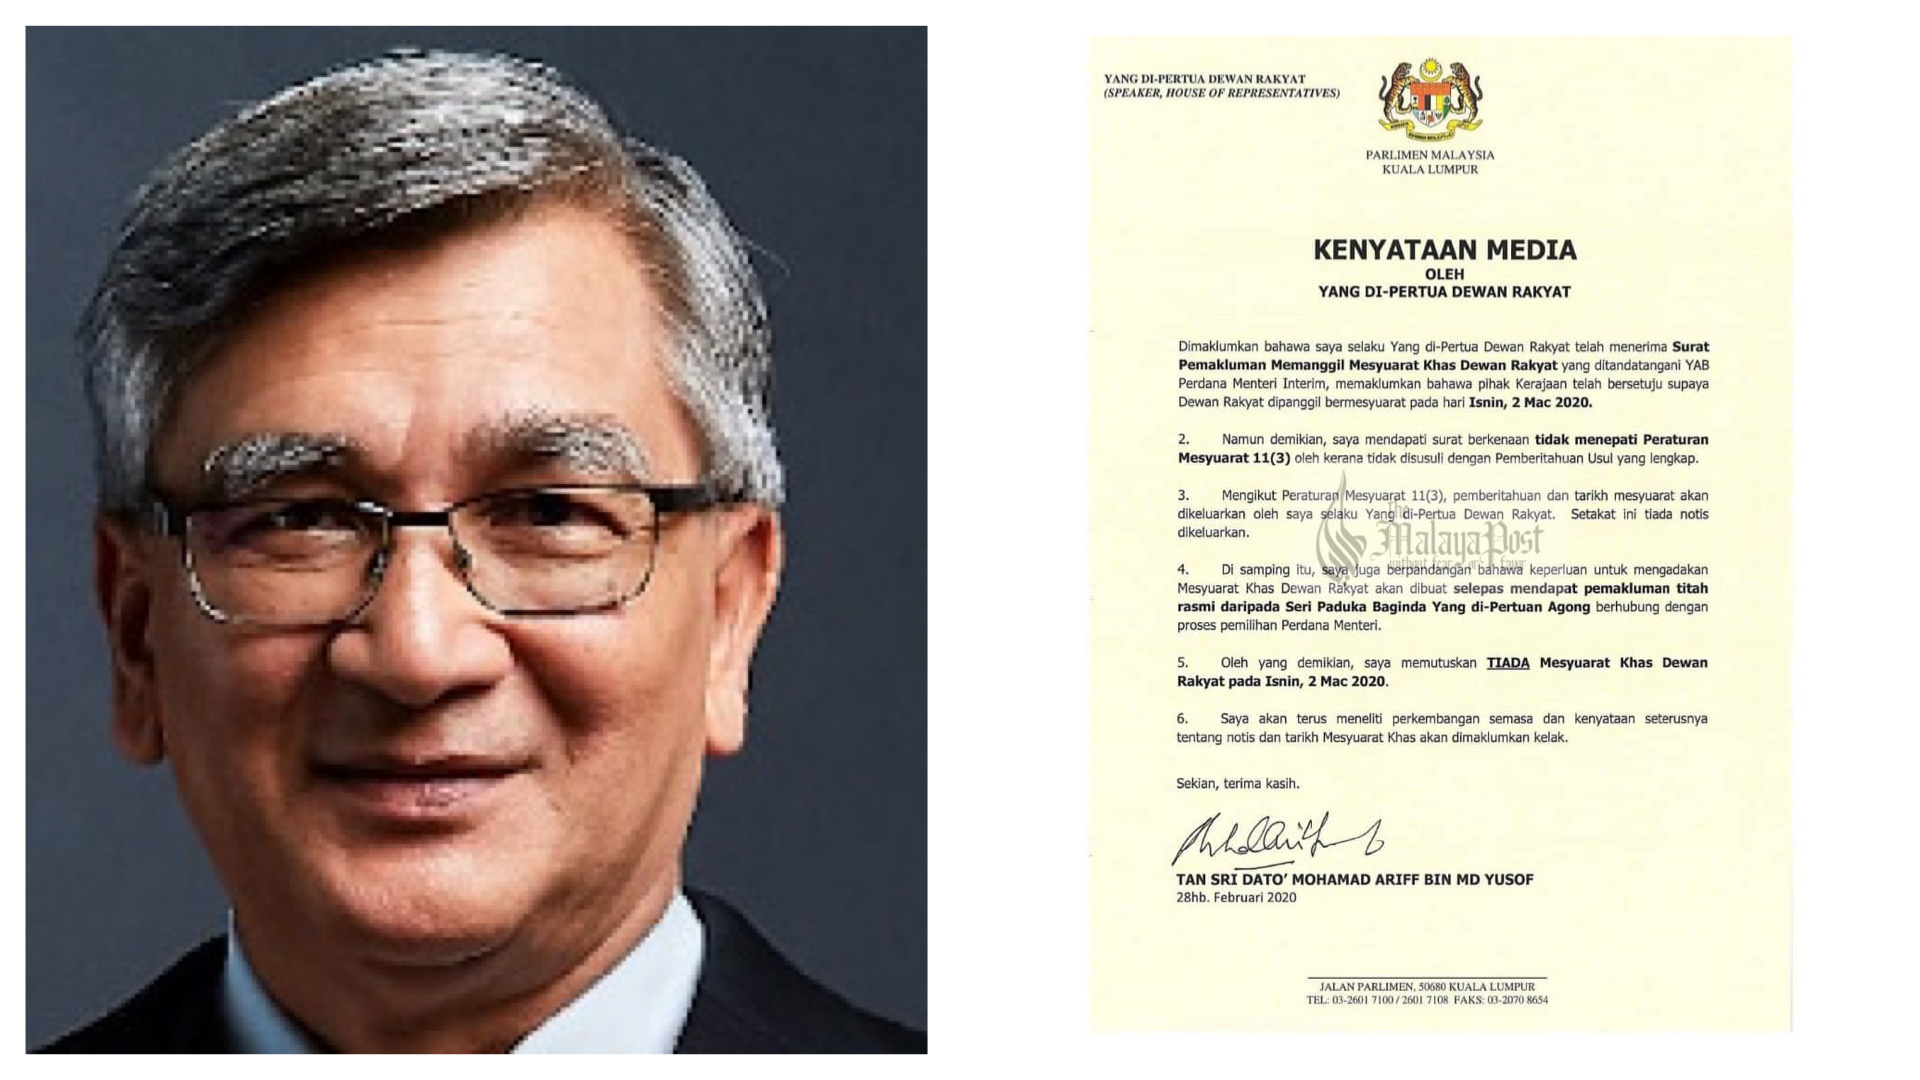 Tiada Mesyuarat Khas Dewan Rakyat - Tan Sri Dato' Mohamad ...